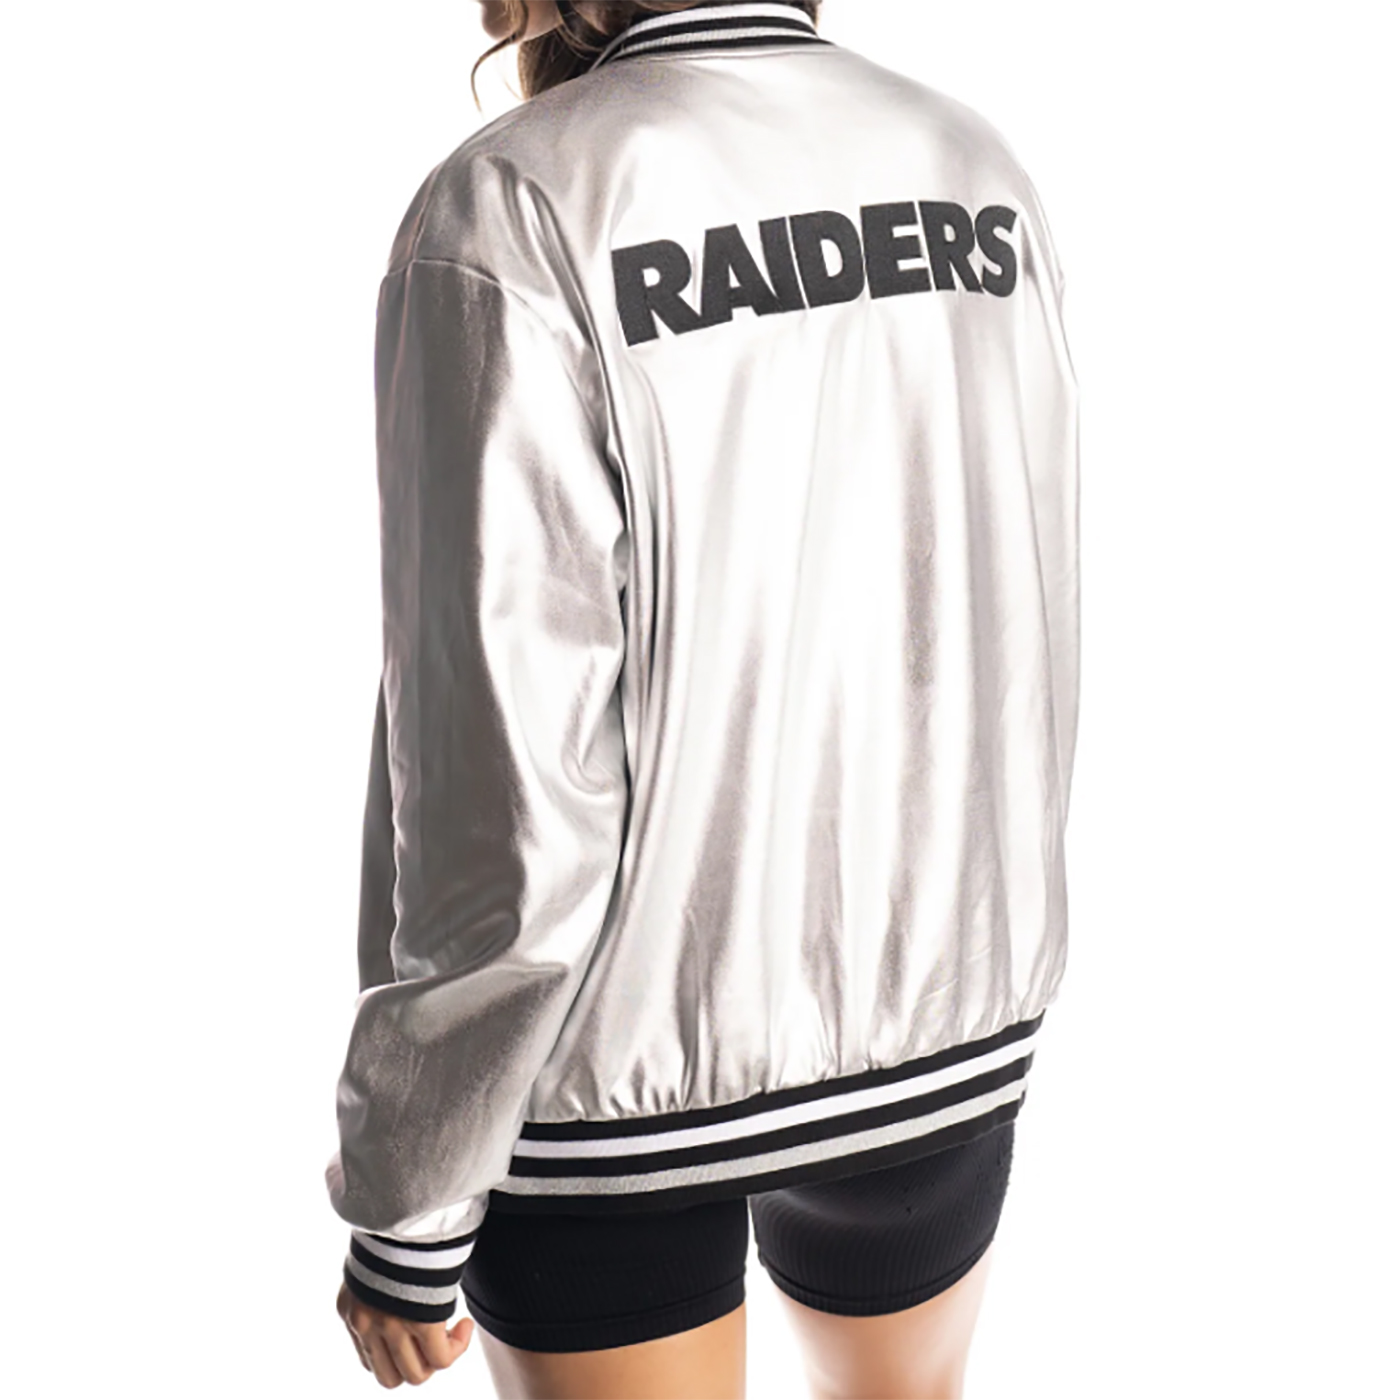 Las Vegas Raiders Bomber Jacket  Las Vegas Raiders Varsity Jacket